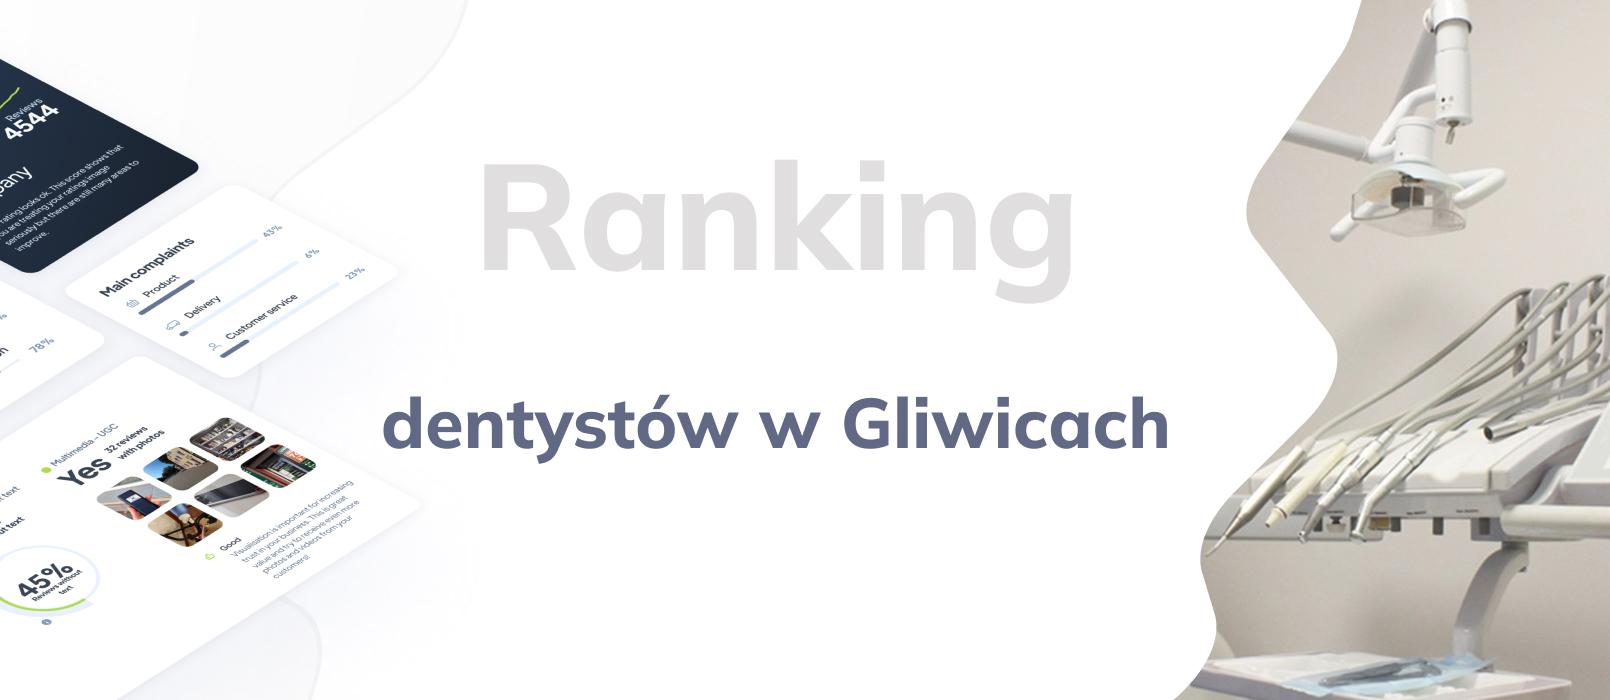 Dentyści w Gliwicach - ranking TOP 10